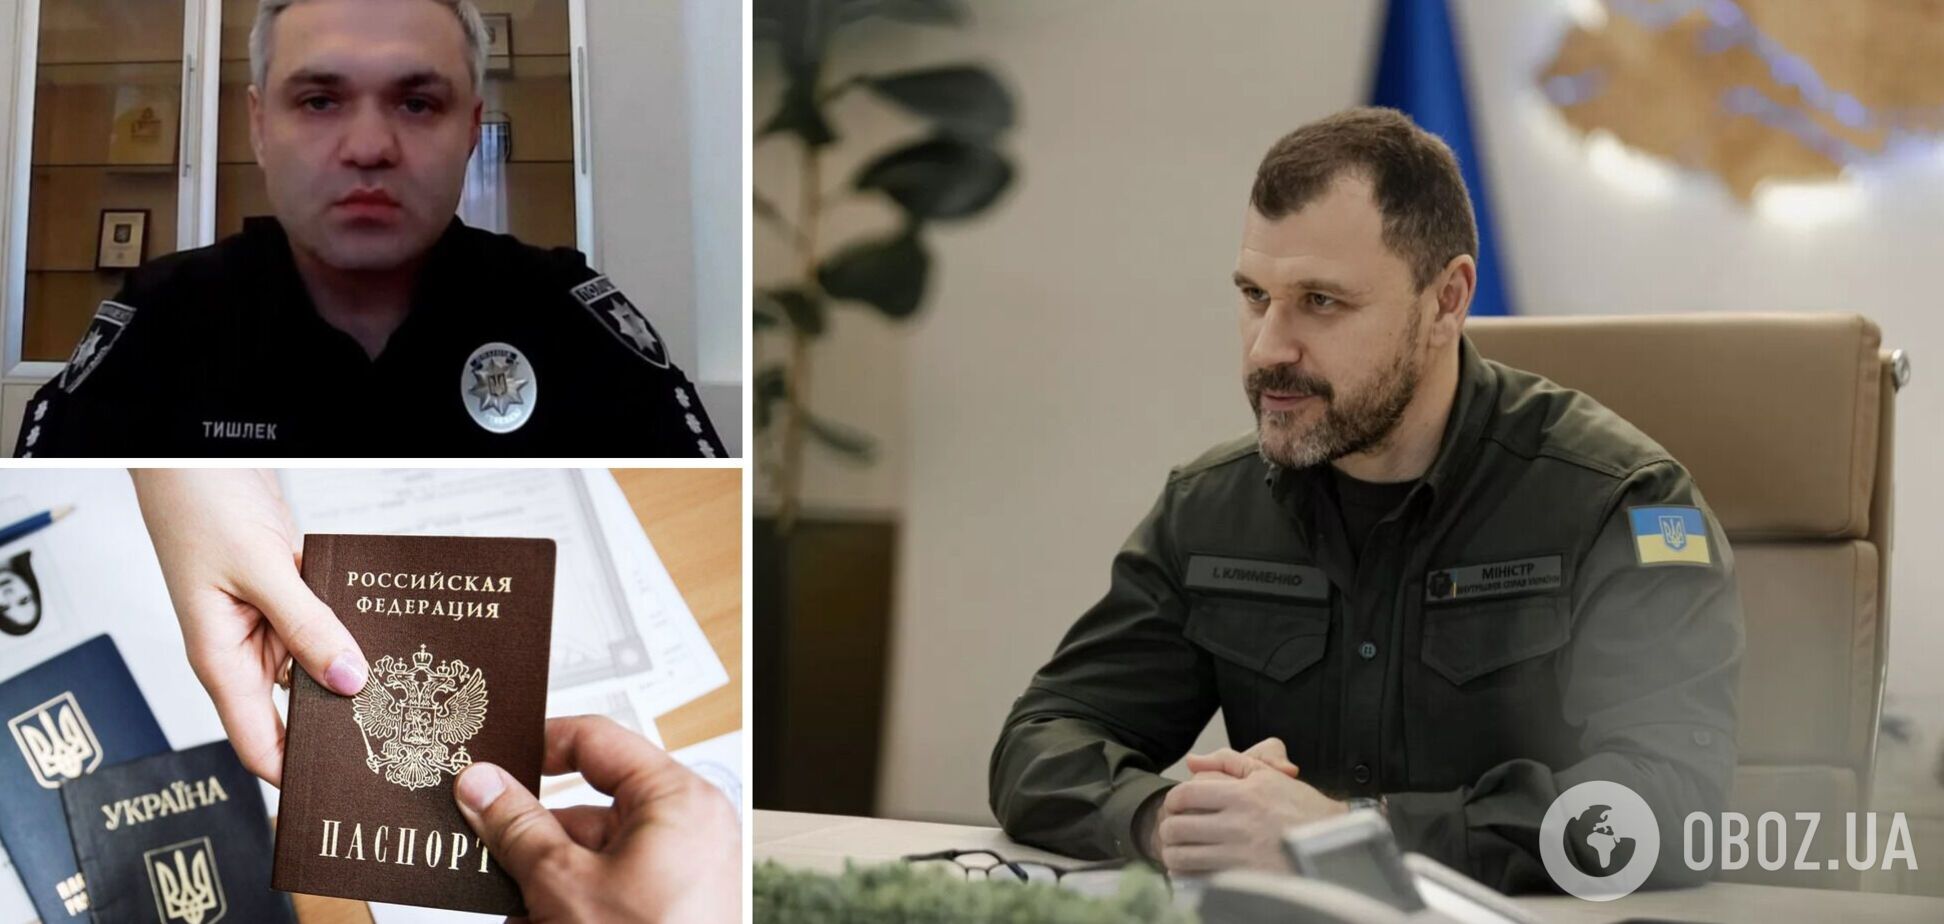 'Юридически наличие российского паспорта не является основанием для увольнения': глава МВД прокомментировал расследование относительно Тишлека